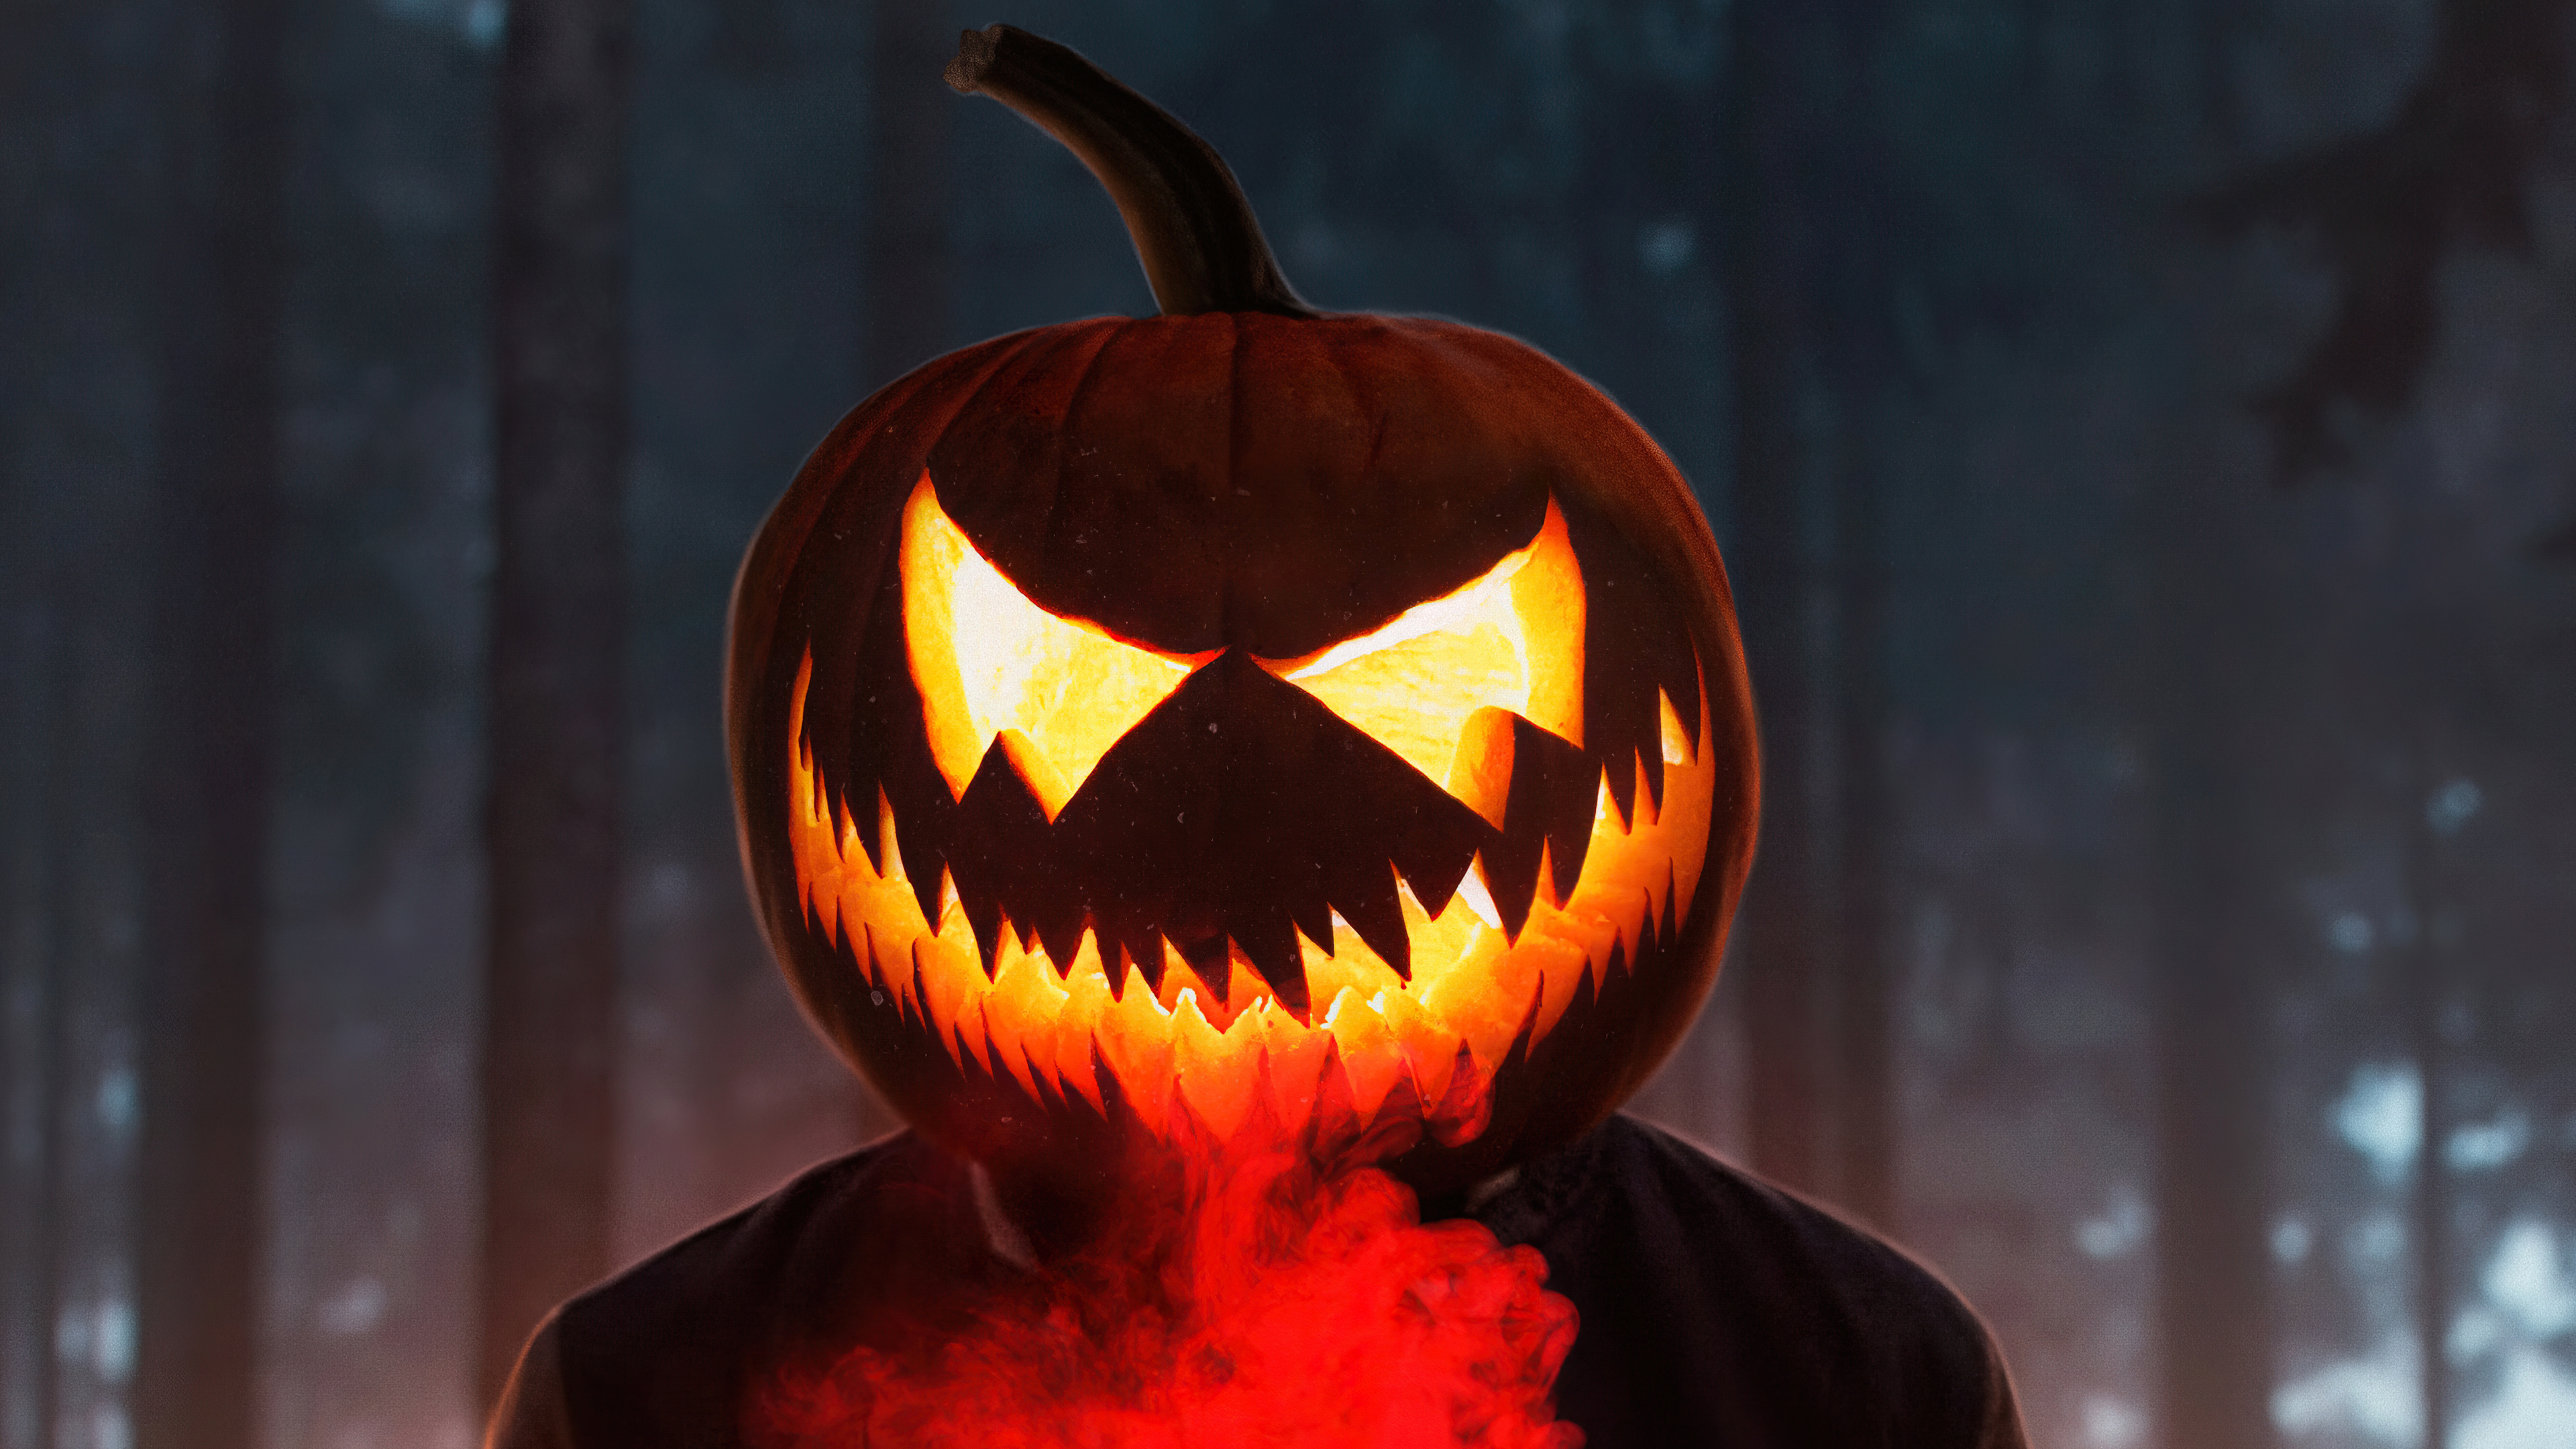 halloween-glowing-mask-boy-4k-w4.jpg